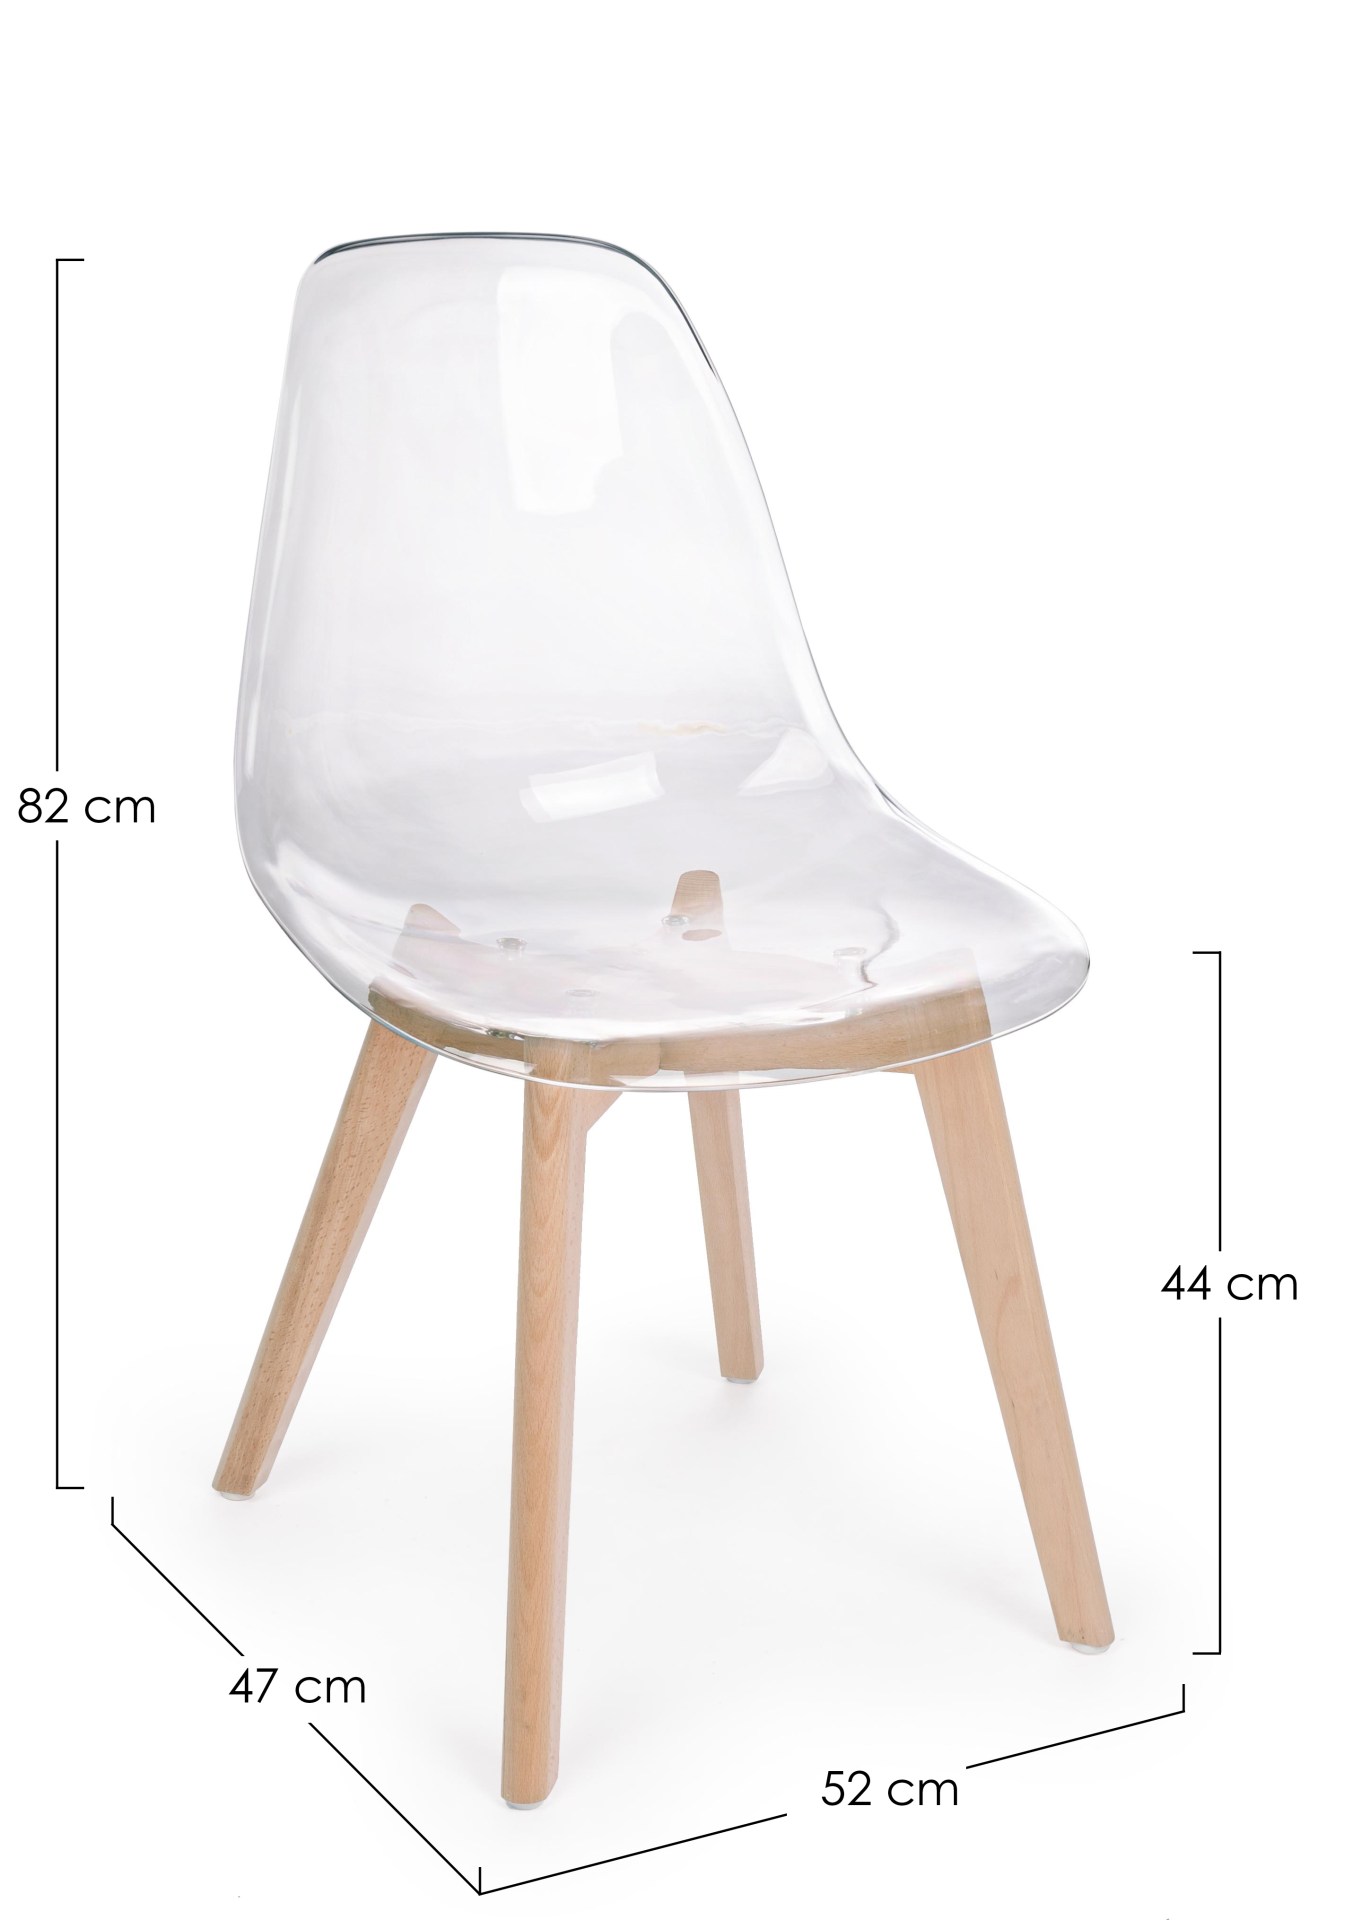 Der Stuhl Easy überzeugt mit seinem modernem aber auch besonderem Design. Gefertigt wurde die Sitzschale aus Kunststoff, welche Transparent ist. Das Gestell ist aus Buchenholz und hat einen natürlichen Farbton. Die Sitzhöhe beträgt 44 cm.